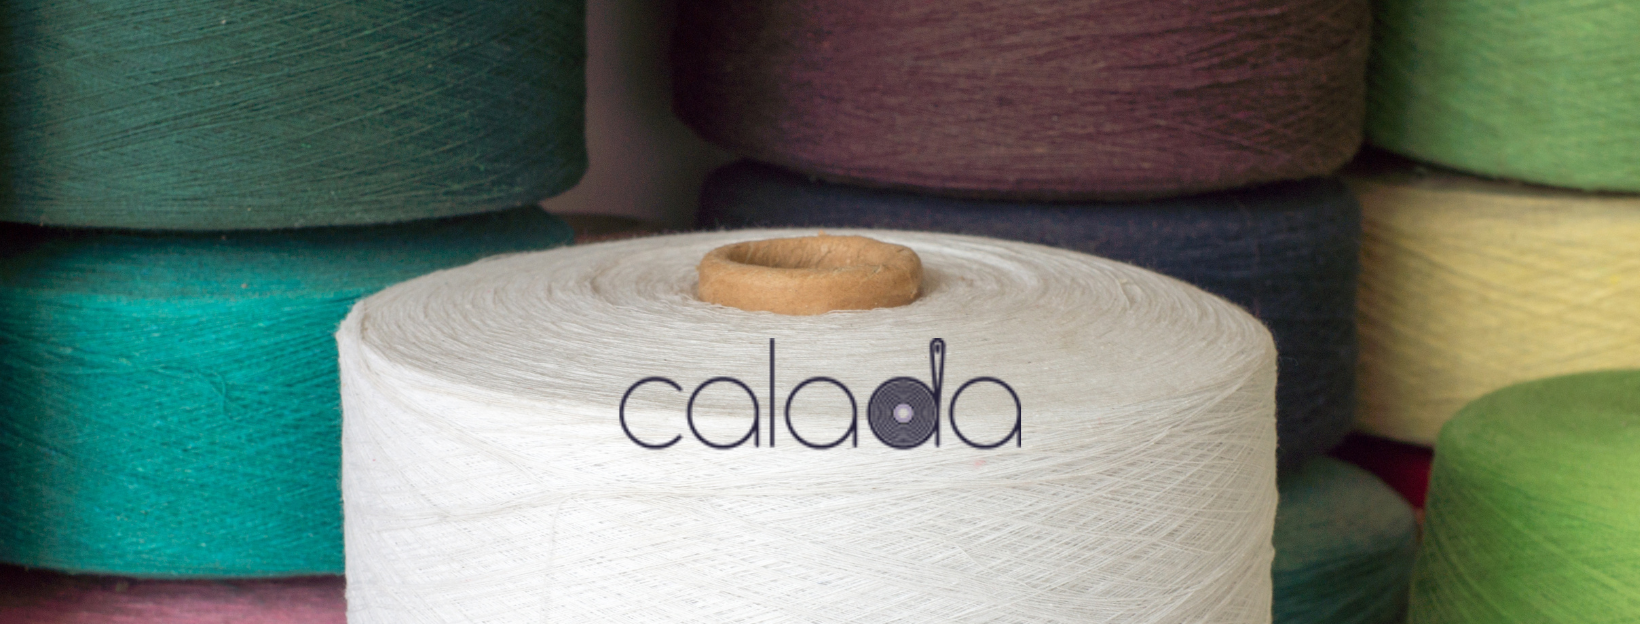 New website for Calada Hilados